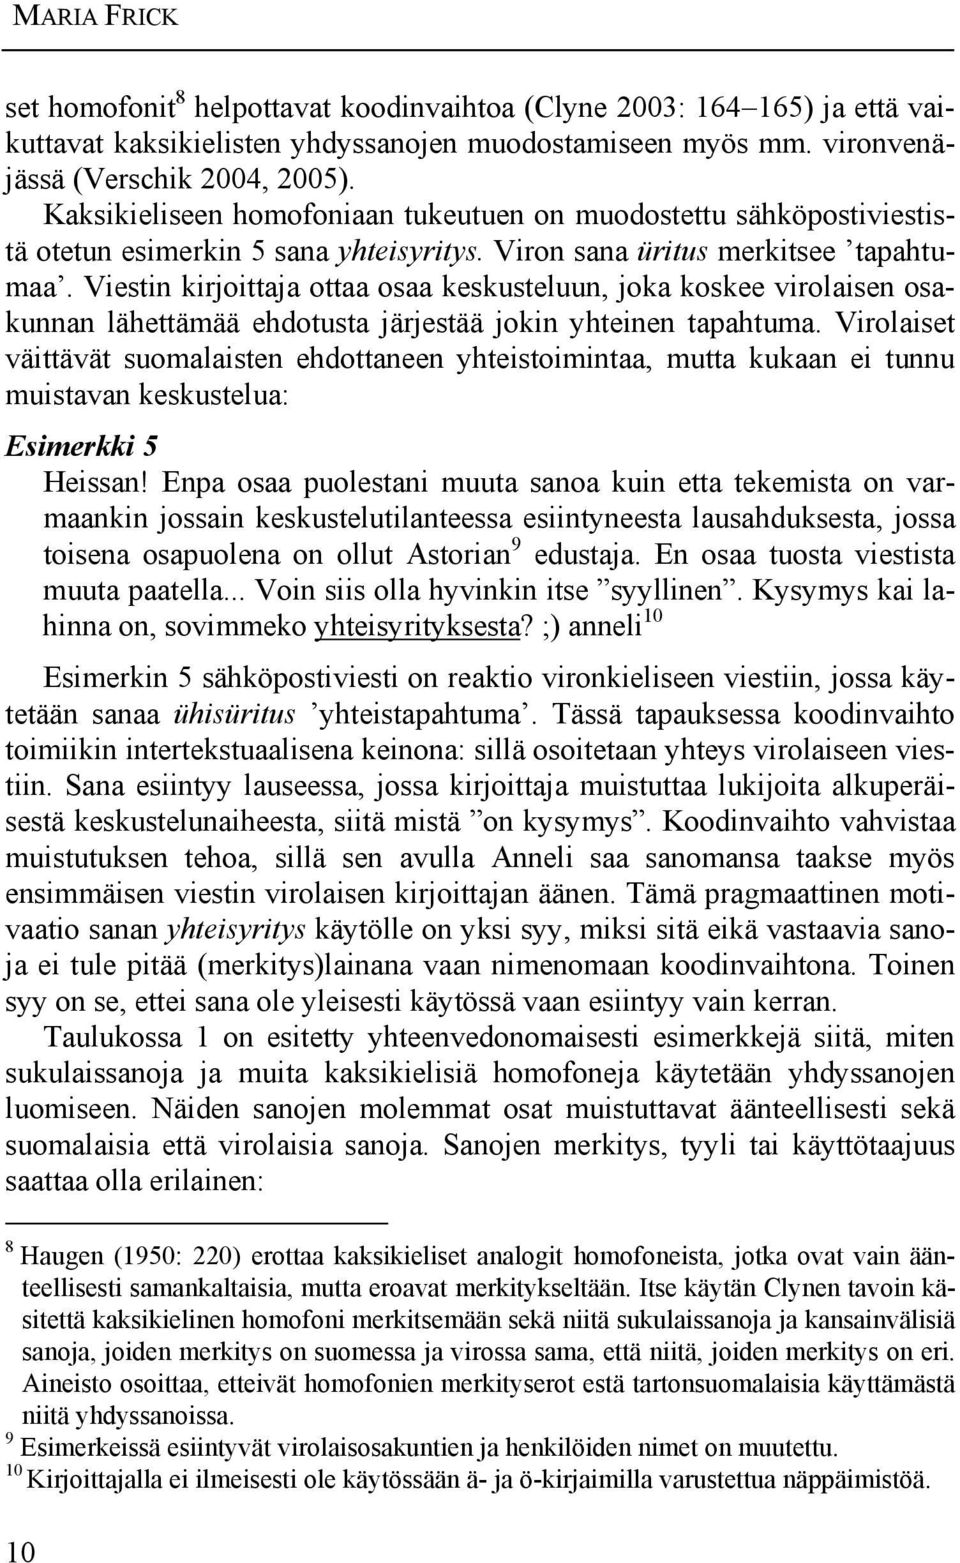 Viestin kirjoittaja ottaa osaa keskusteluun, joka koskee virolaisen osakunnan lähettämää ehdotusta järjestää jokin yhteinen tapahtuma.